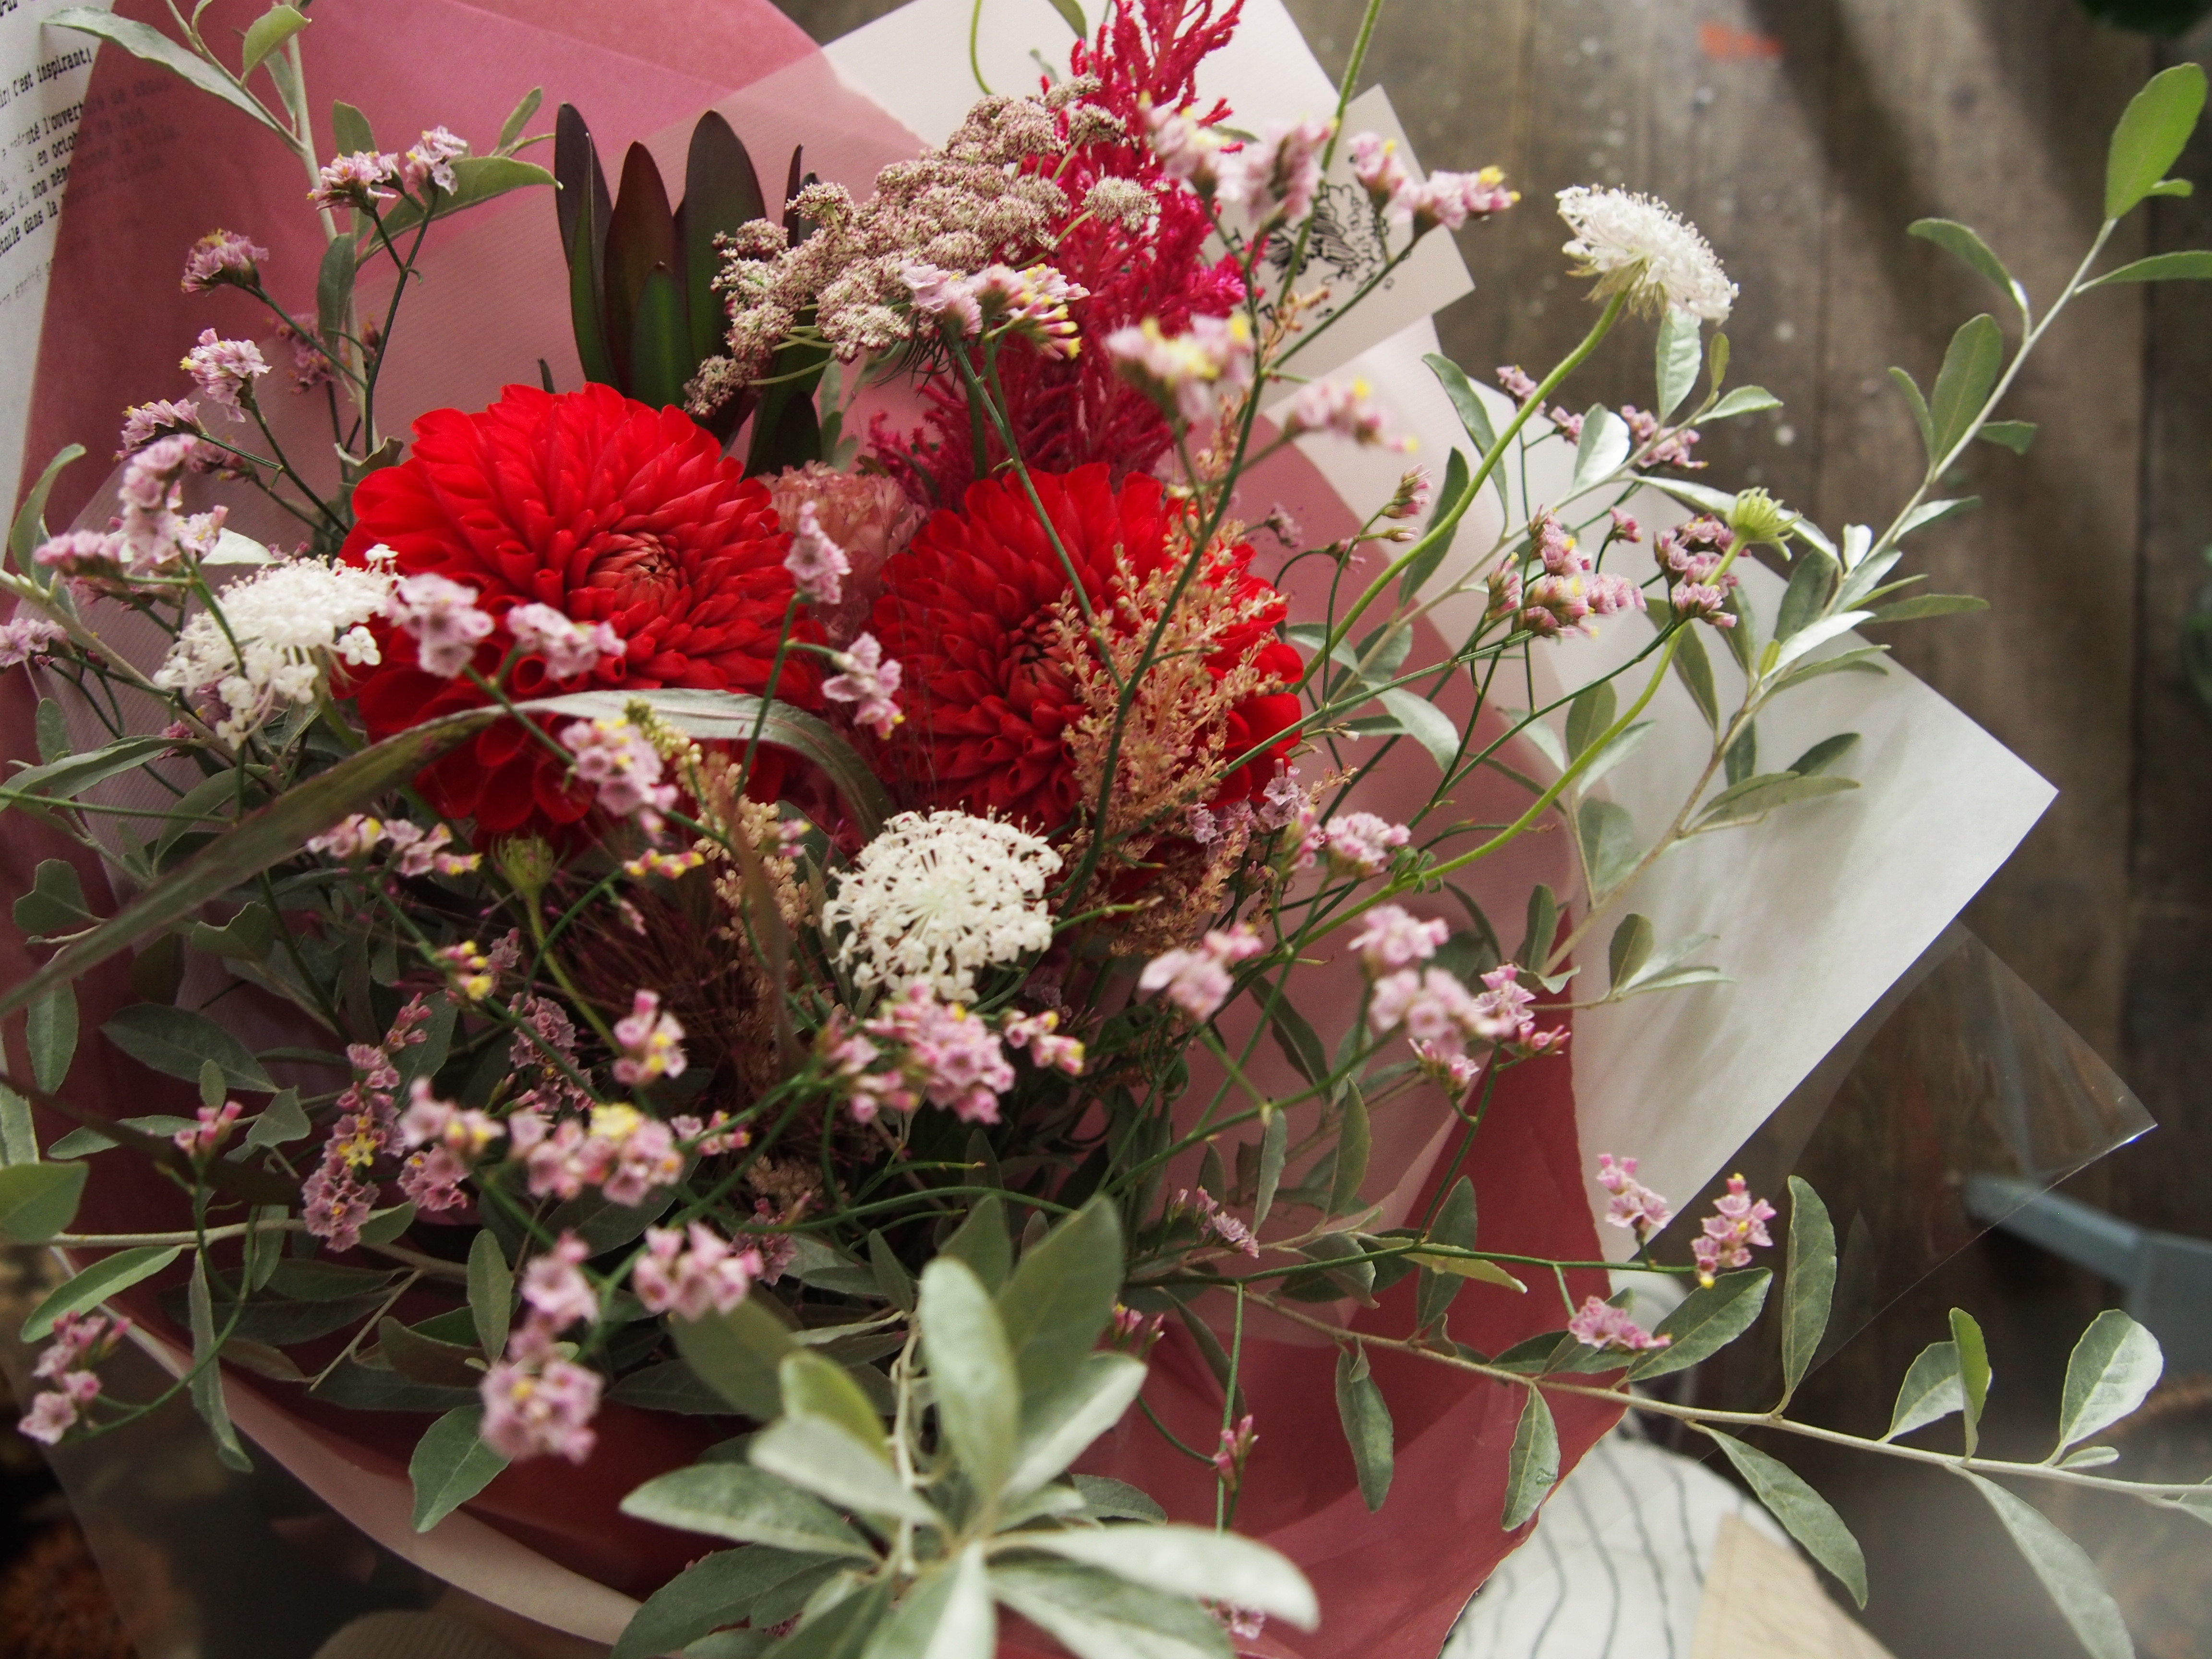 花束 福岡中央区舞鶴の花屋tecapo テカポ ギフトの花束や結婚式のお花など季節のお花でお届けします